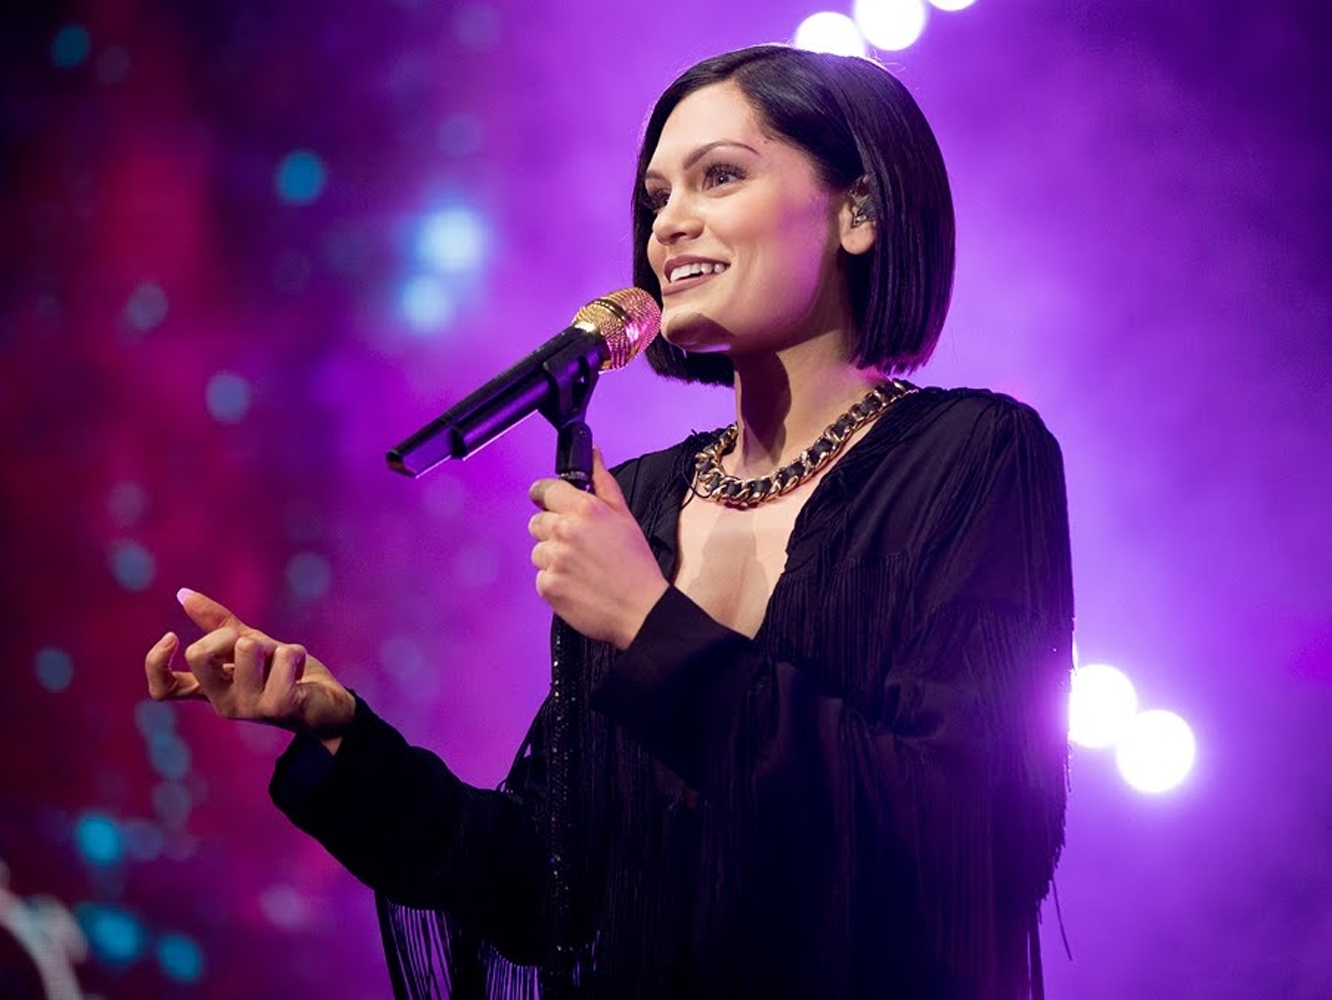  El talent show chino está haciendo más bien poco en favor de la carrera de Jessie J